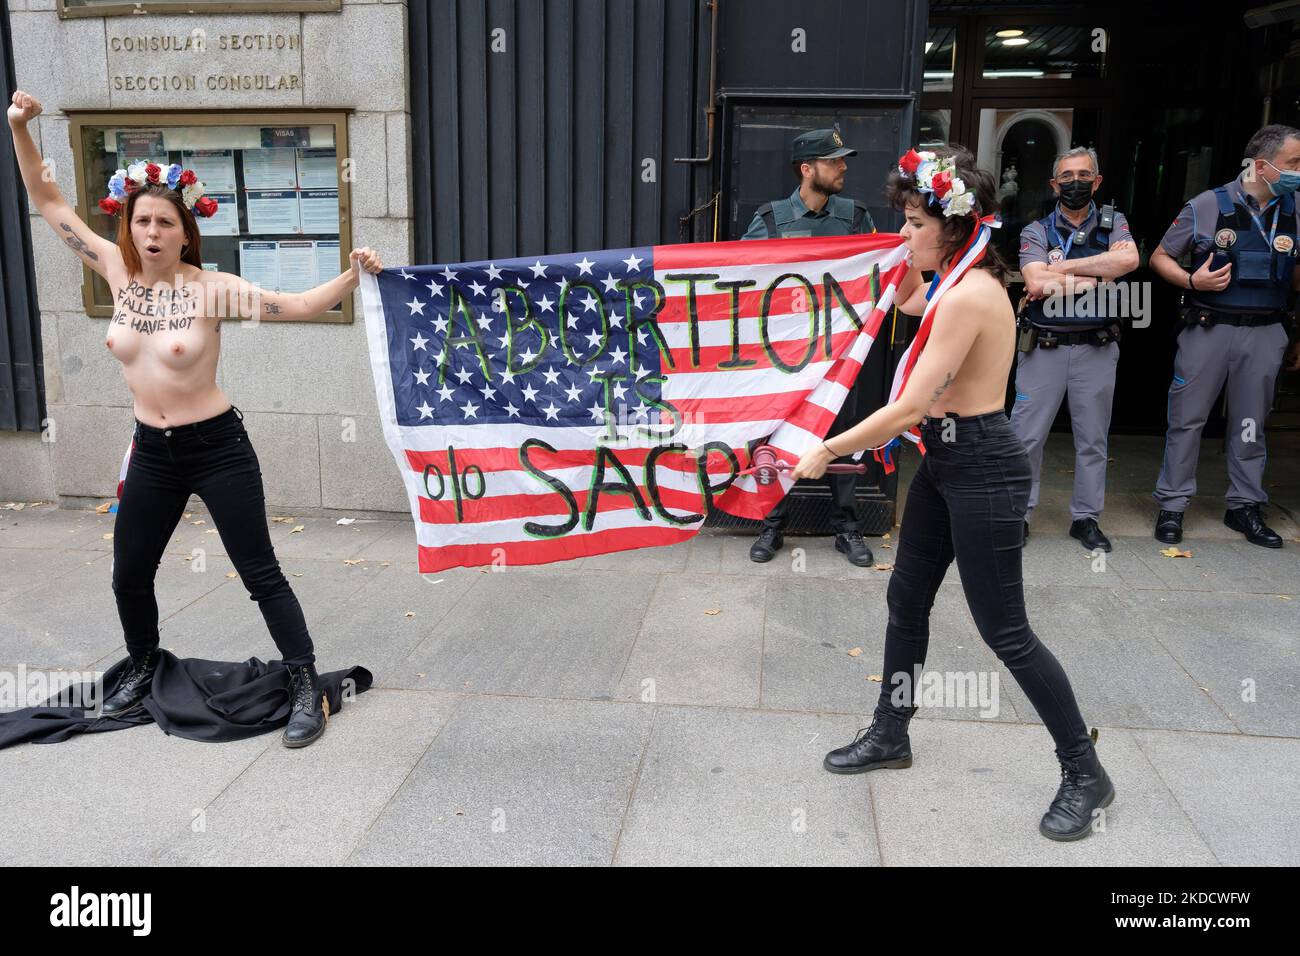 (ANMERKUNG DER REDAKTION: Bild enthält Nacktheit) zwei FEMEN-Aktivisten protestieren mit einem Transparent "Abtreibung ist heilig" oben ohne vor der US-Botschaft in Madrid. Aktivisten der internationalen feministischen Vereinigung FEMEN protestieren vor der Botschaft der Vereinigten Staaten von Amerika in Madrid, Spanien, gegen die Entscheidung des Obersten Gerichtshofs der USA gegen die freiwillige Unterbrechung der Schwangerschaft. Die Aktivisten zeigten ihre Brüste und trugen ein Transparent mit der Aufschrift „Abtreibung ist heilig“ am 27. Juni 2022 in Madrid, Spanien. (Foto von Oscar Gonzalez/NurPhoto) Stockfoto